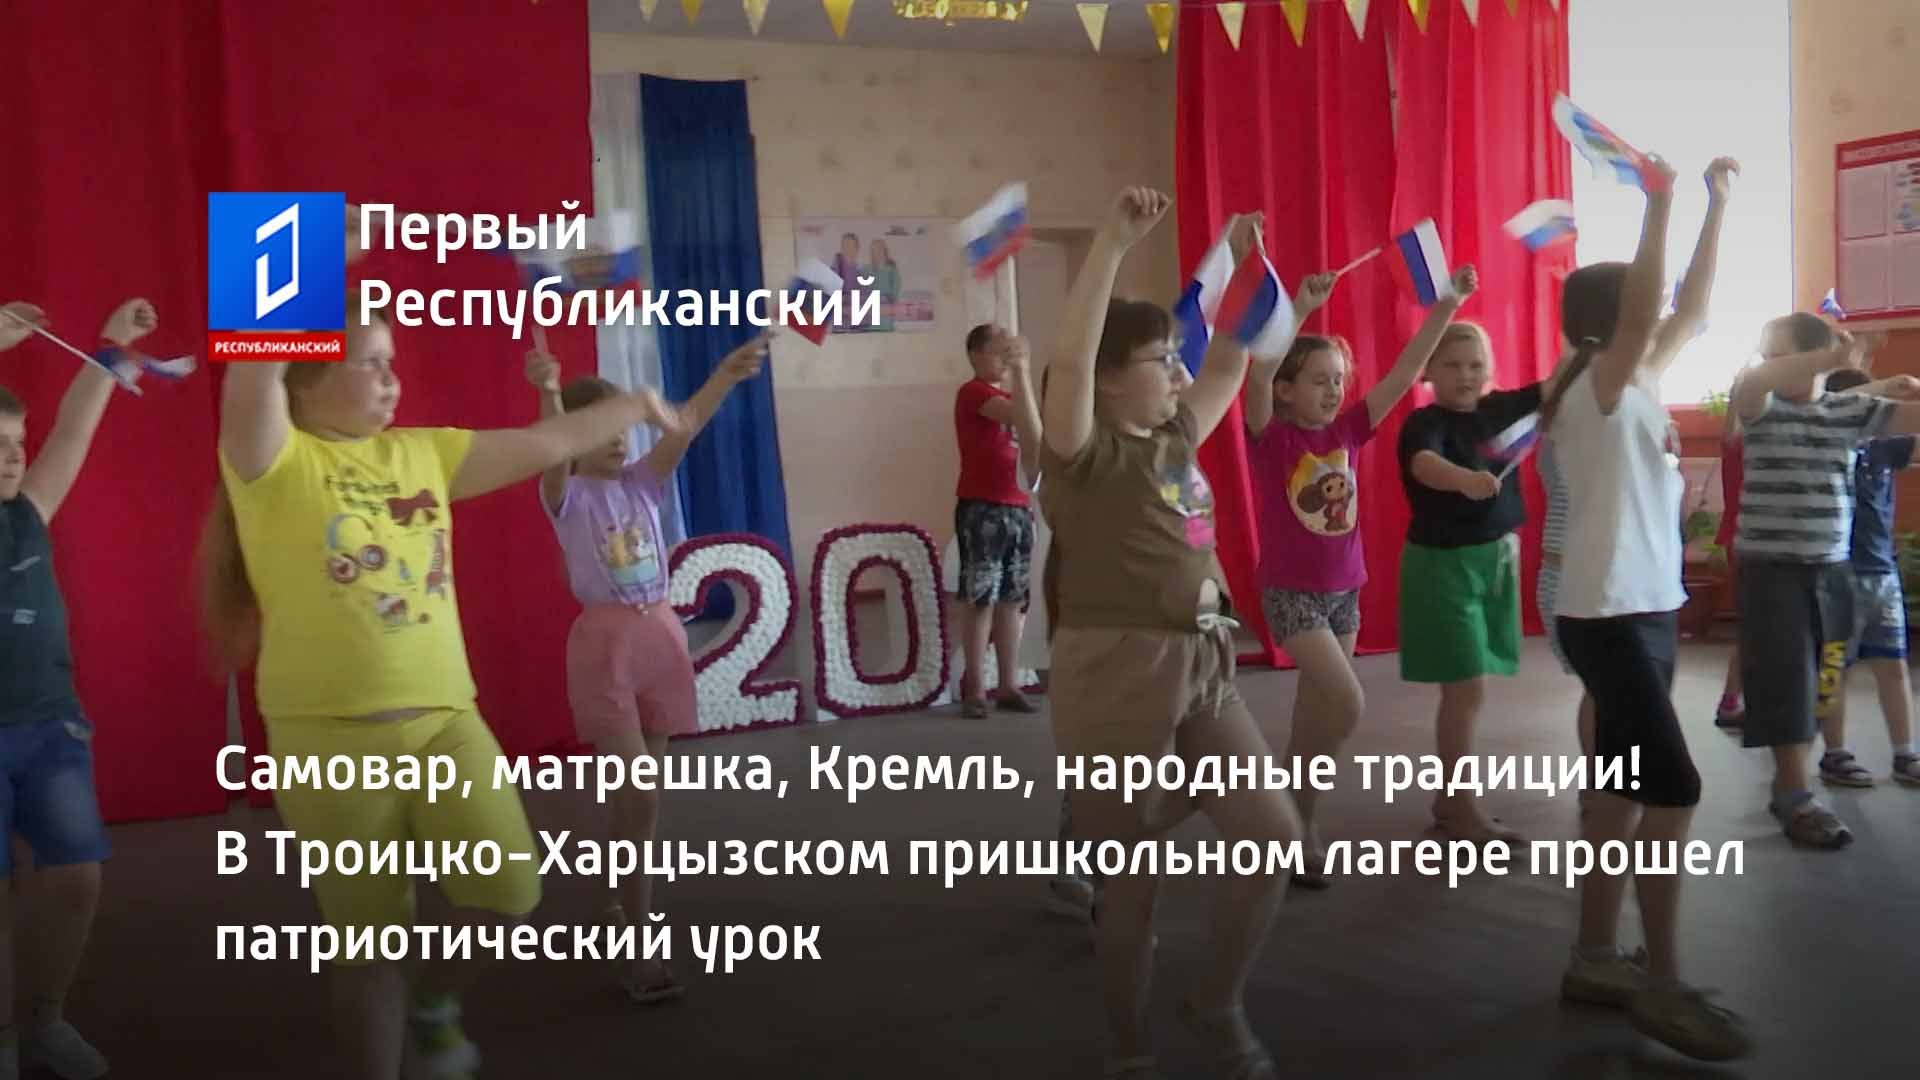 В Троицко-Харцызском пришкольном лагере прошел патриотический урок